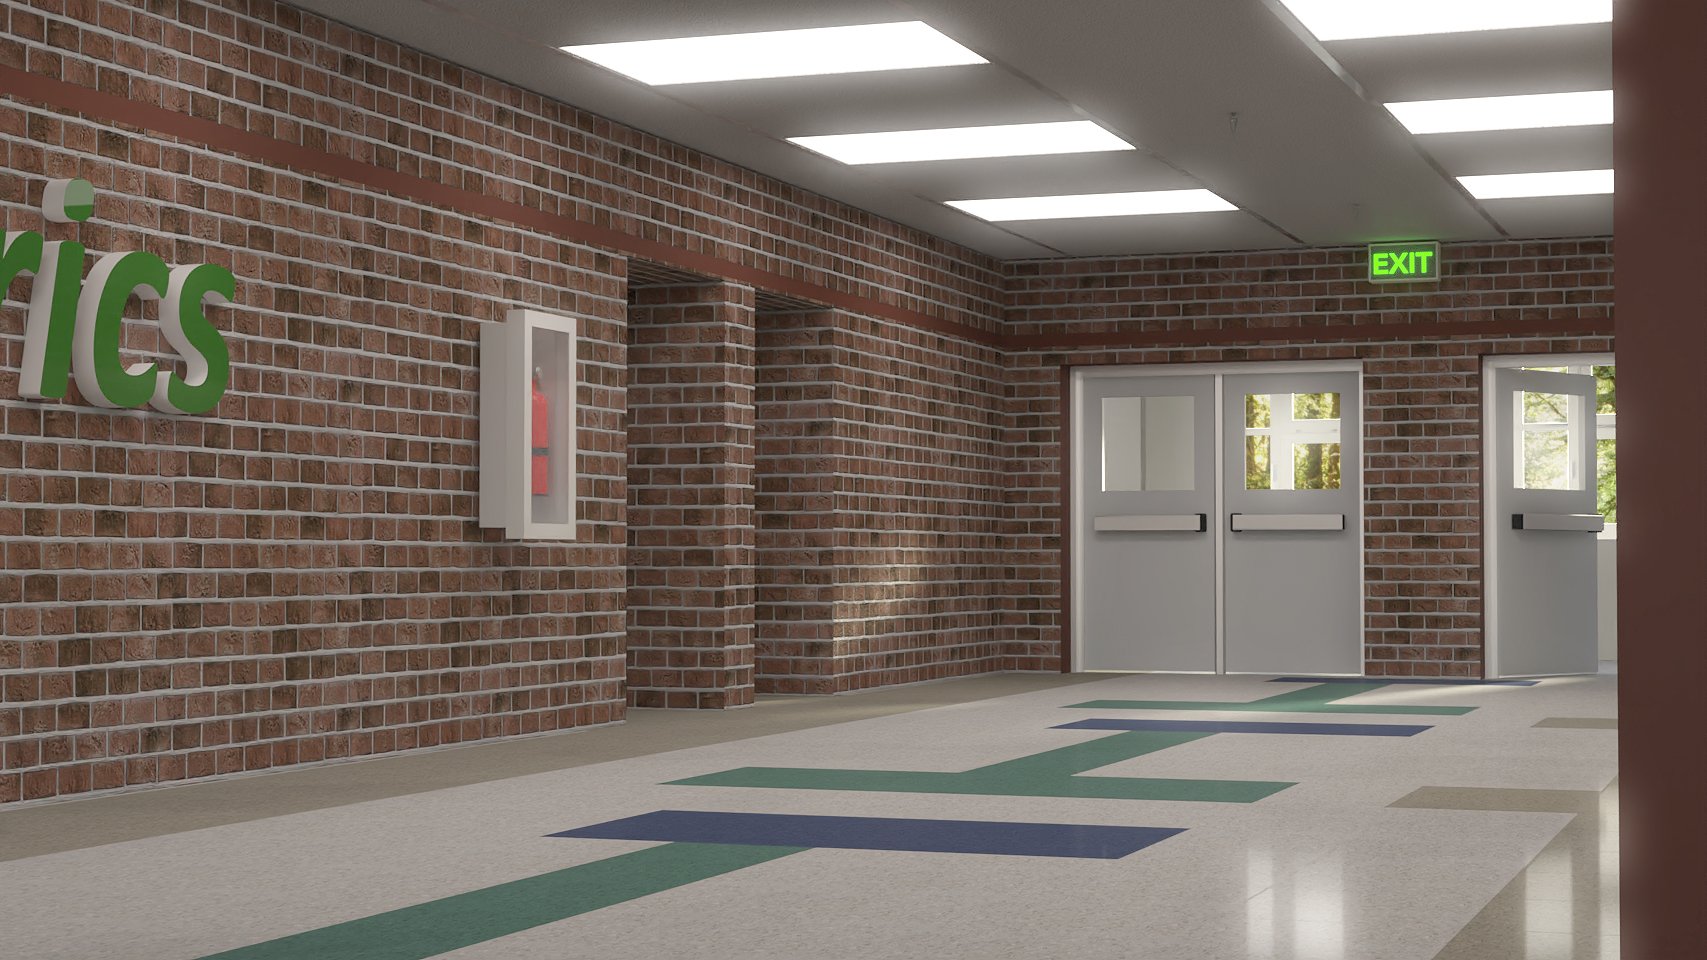 High School Hallway 2 by: Digitallab3D, 3D Models by Daz 3D